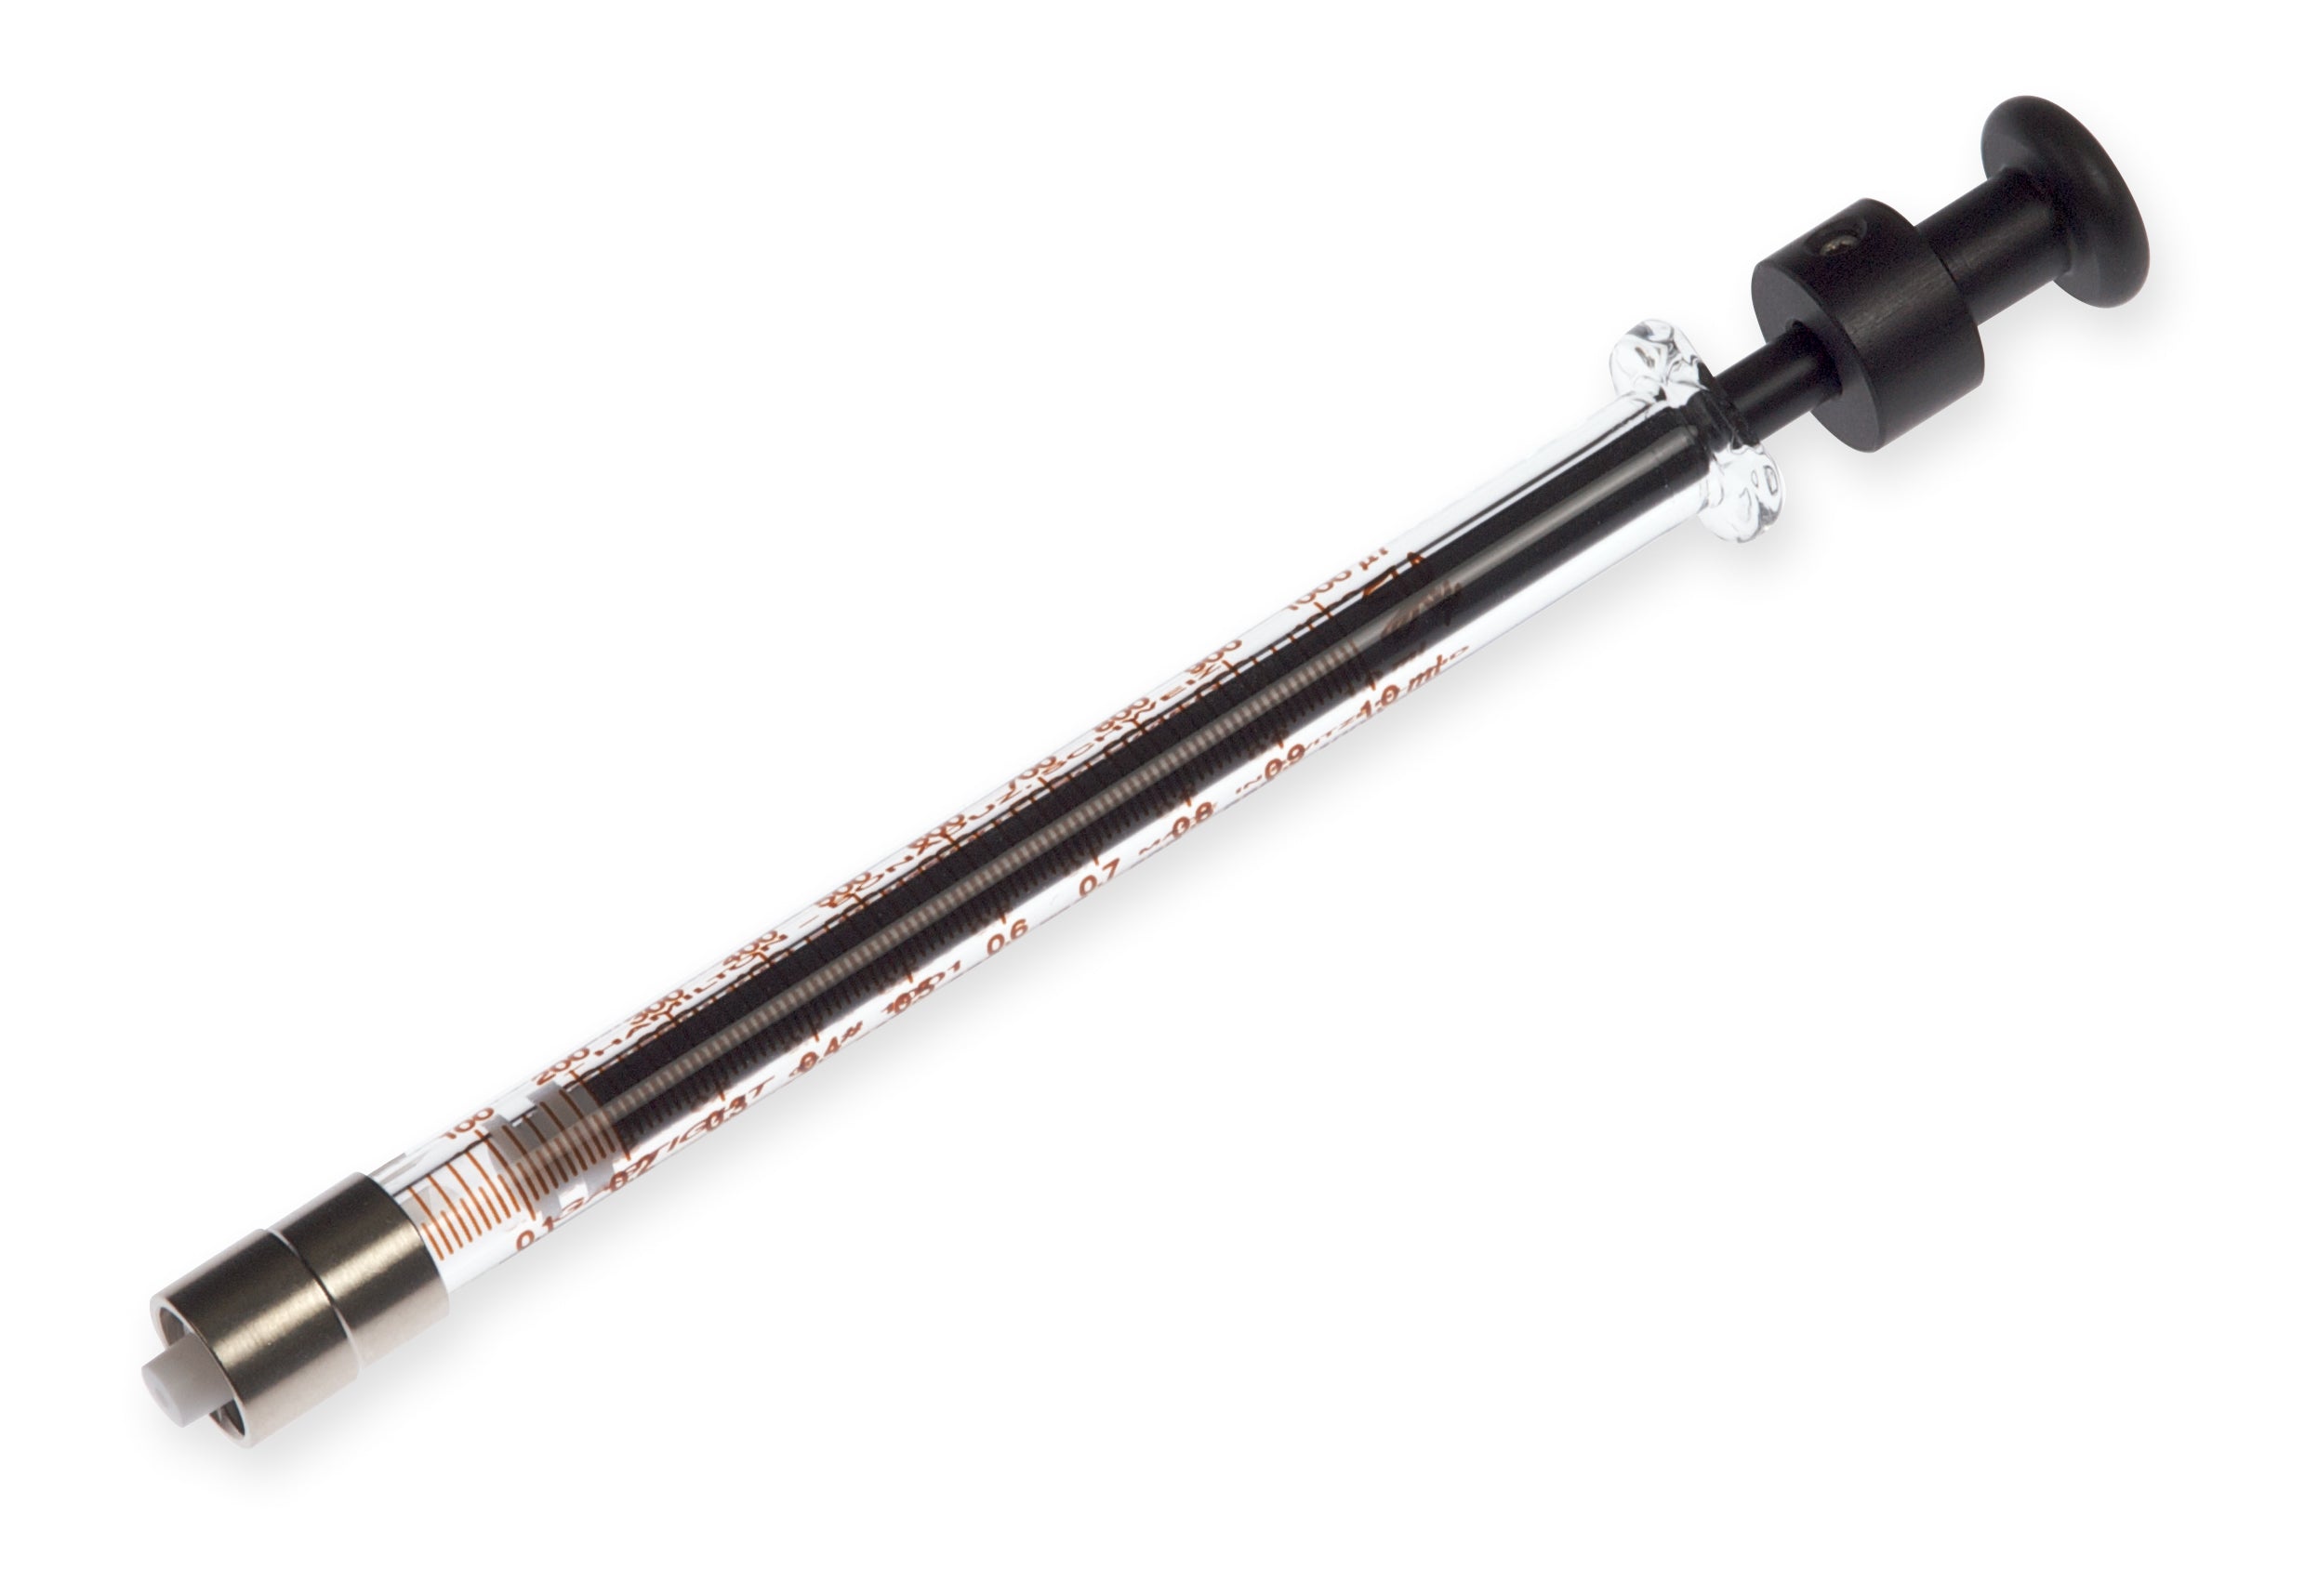 1 mL, Model 1001 TLLX SYR, Instrument Syringe